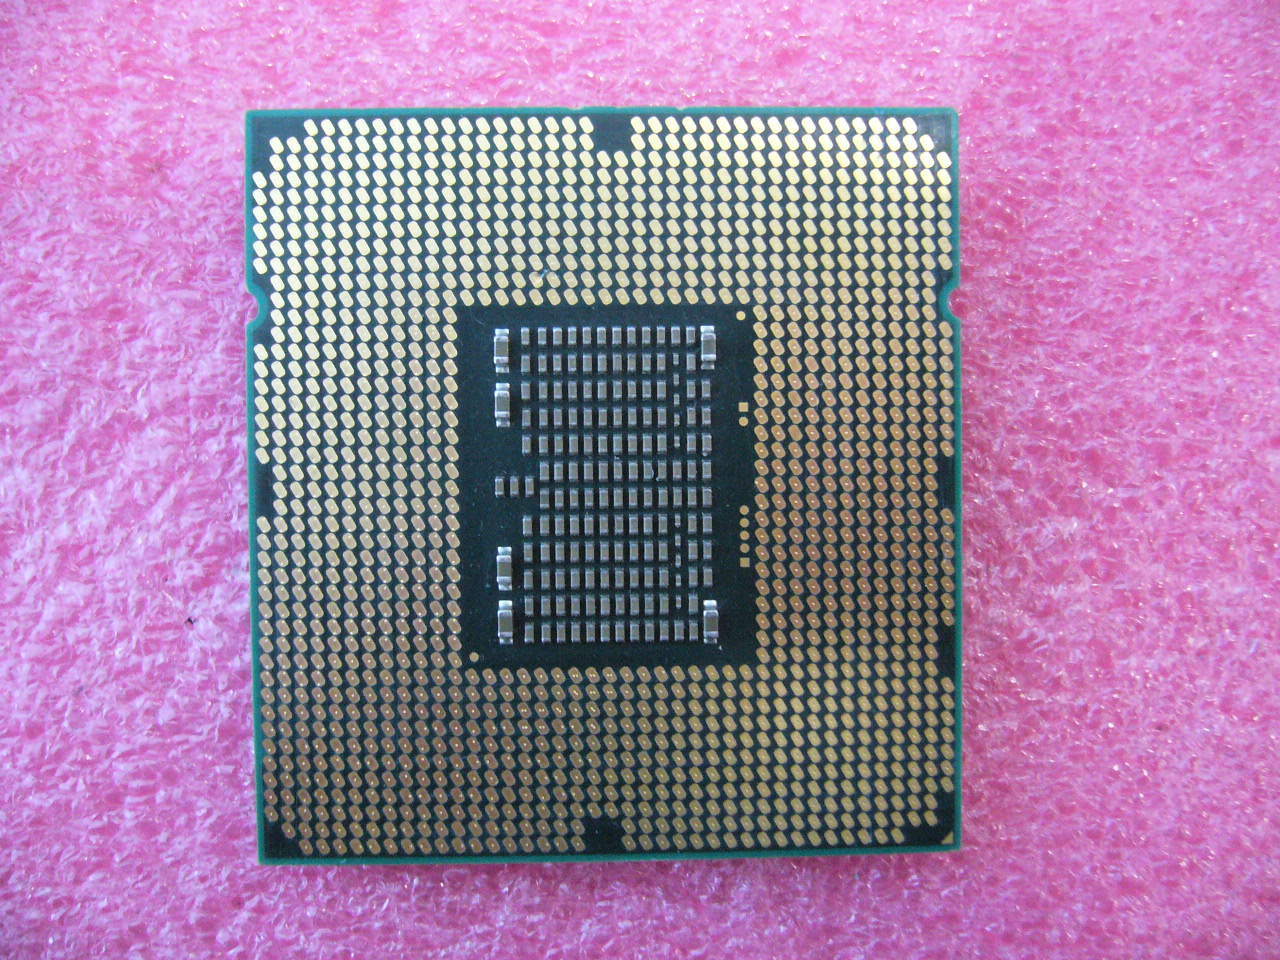 QTY 1x INTEL Xeon CPU X5650 2.66GHZ/12MB LGA1366 SLBV3 chipped corner MEM A NW - Click Image to Close